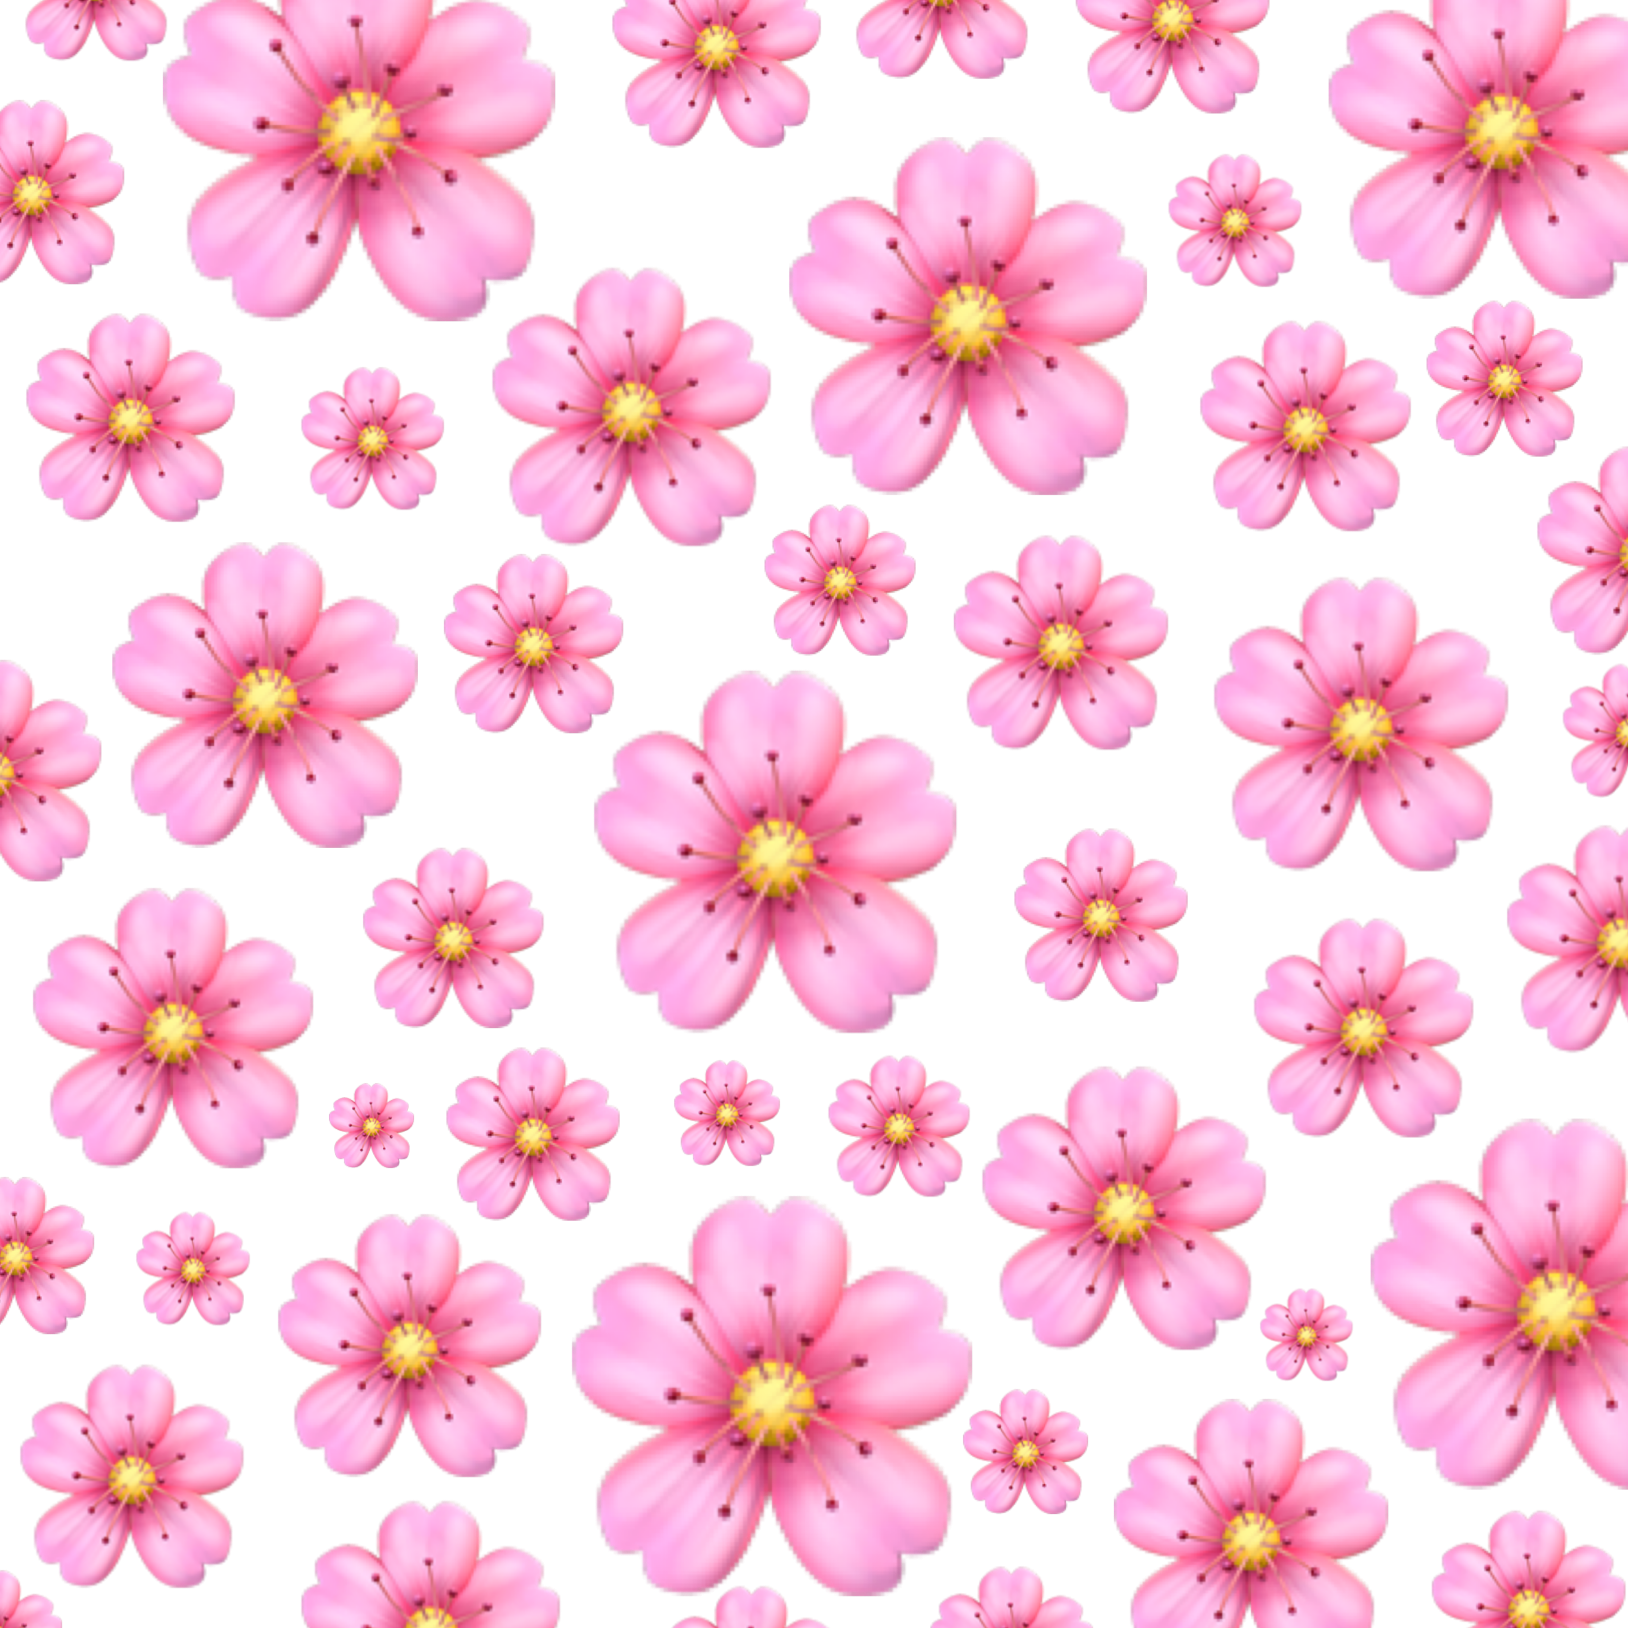 Мелкие розовые цветы. Маленькие розовые цветочки. Фон в мелкий цветочек. Фон мелкие розовые цветы. Маленькие цветы розового цвета